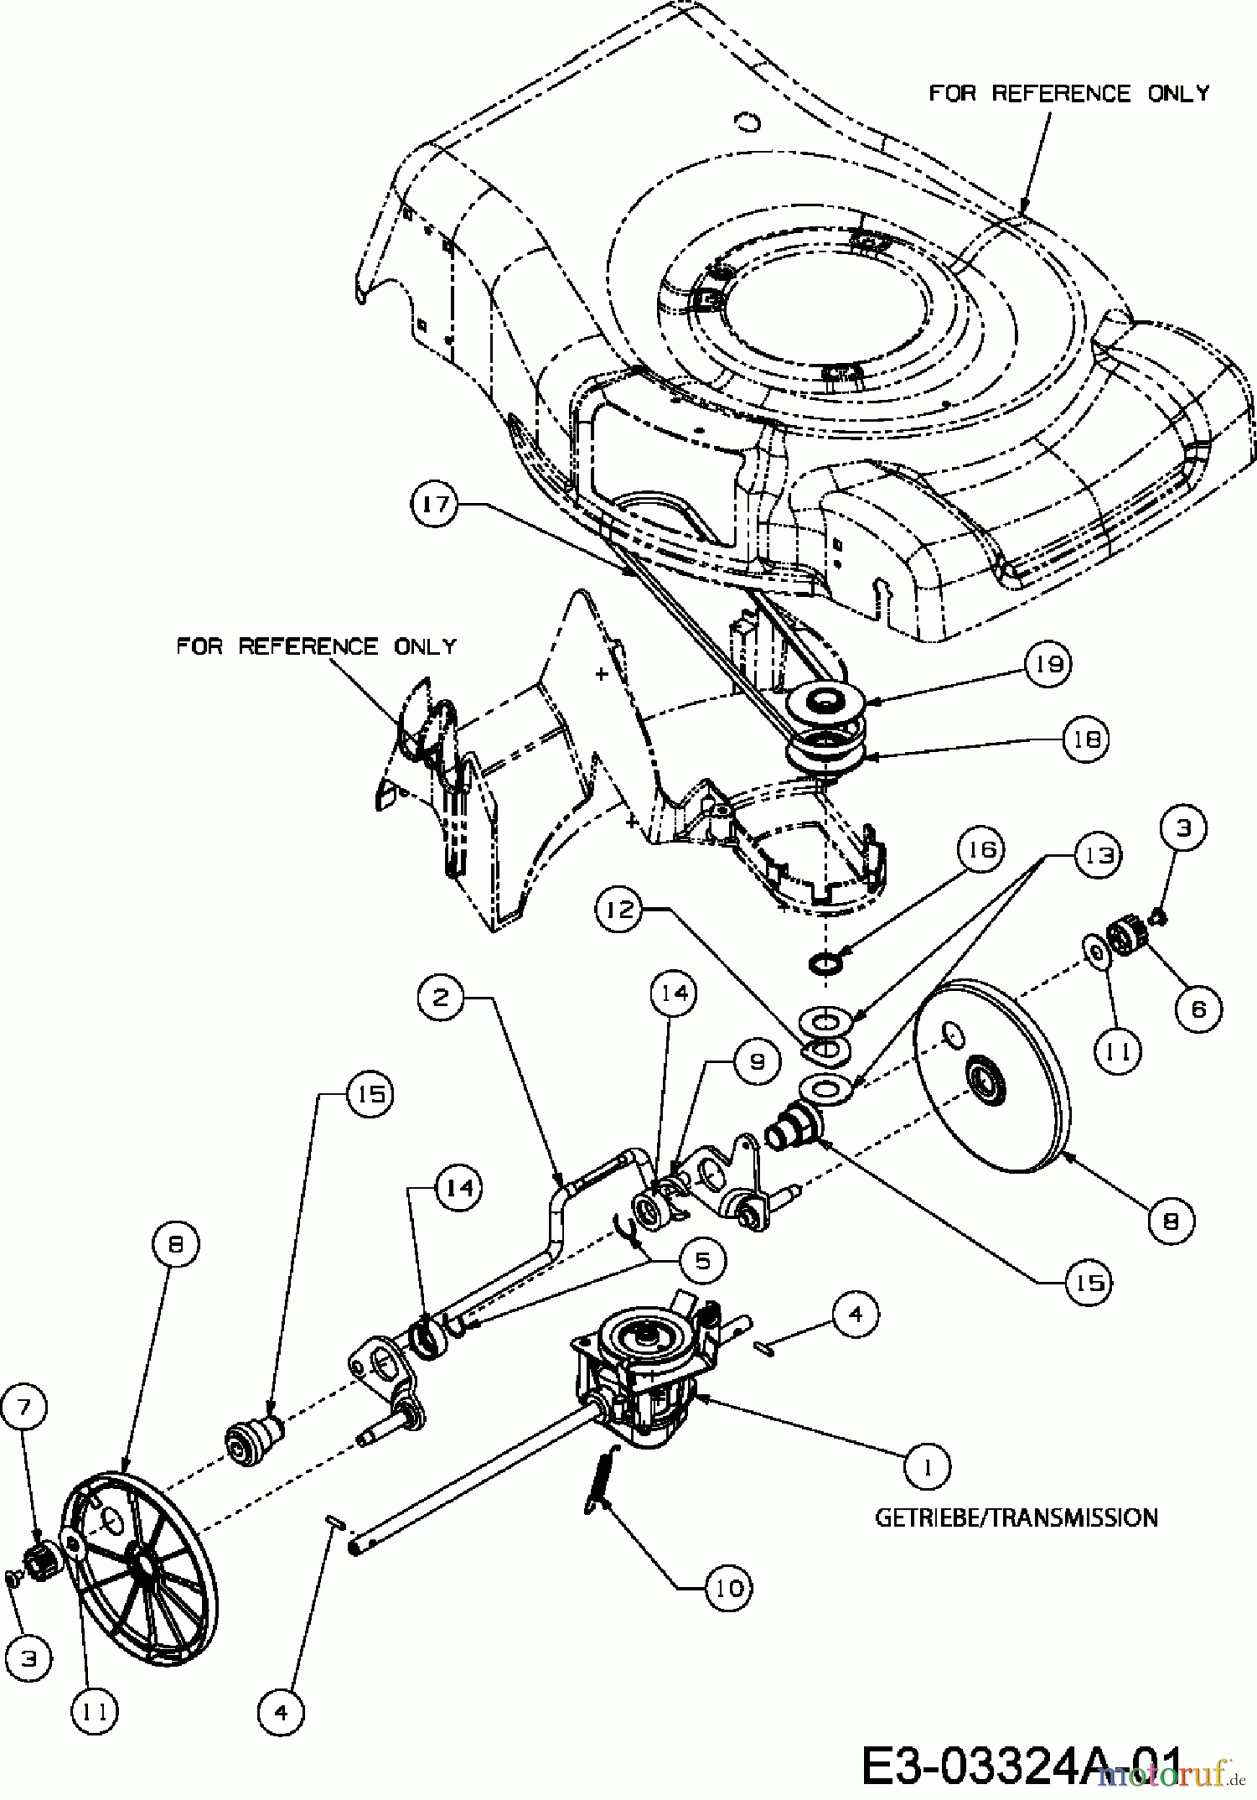  Mastercut Motormäher mit Antrieb SP 53 O 12BV84MF657  (2007) Getriebe, Motorkeilriemenscheibe